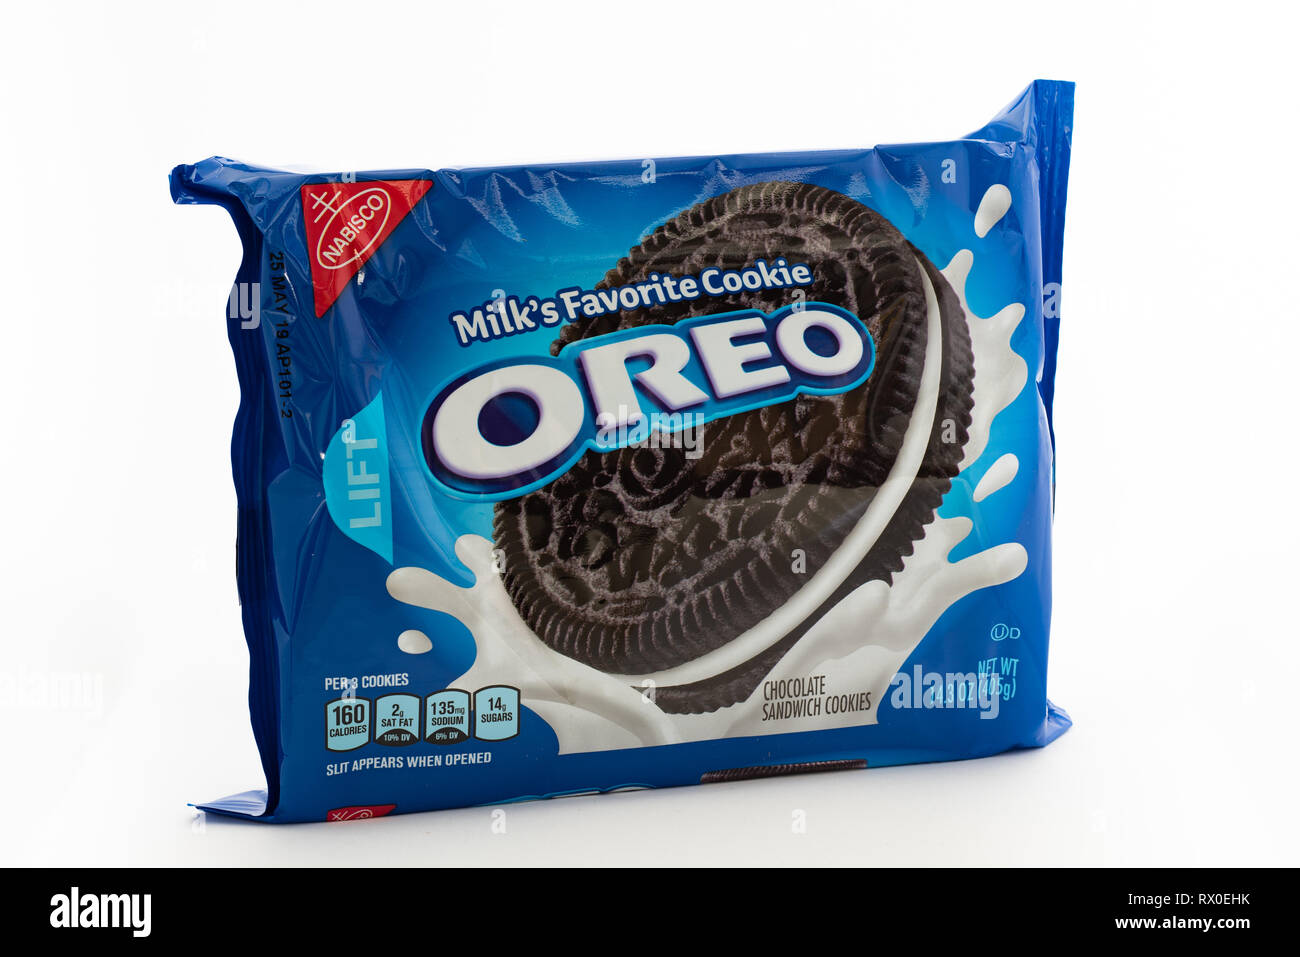 Eine helle blaue Verpackung der traditionellen Oreo Cookies, die Milch Favorite Cookie Stockfoto